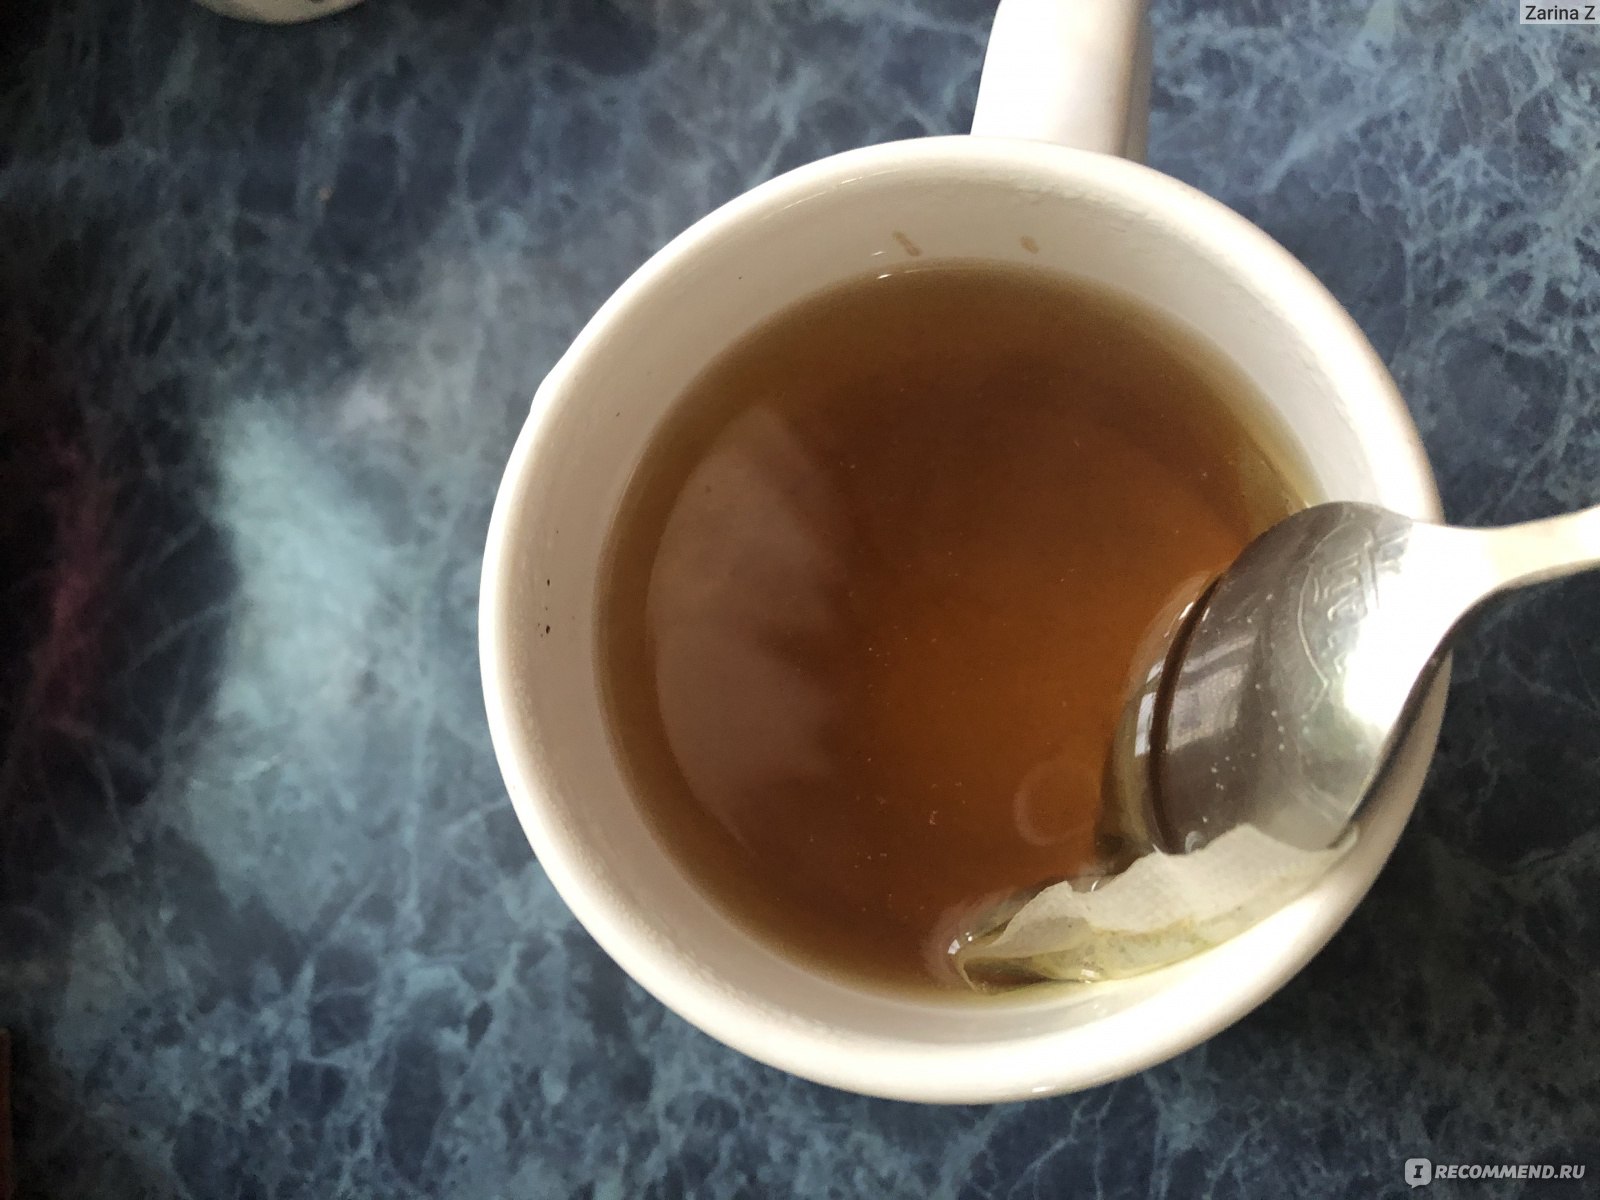 Травяной чай Siberian Wellness (Сибирское здоровье) Turbo Tea (Очищающий турбочай) - Yoo Gо! фото